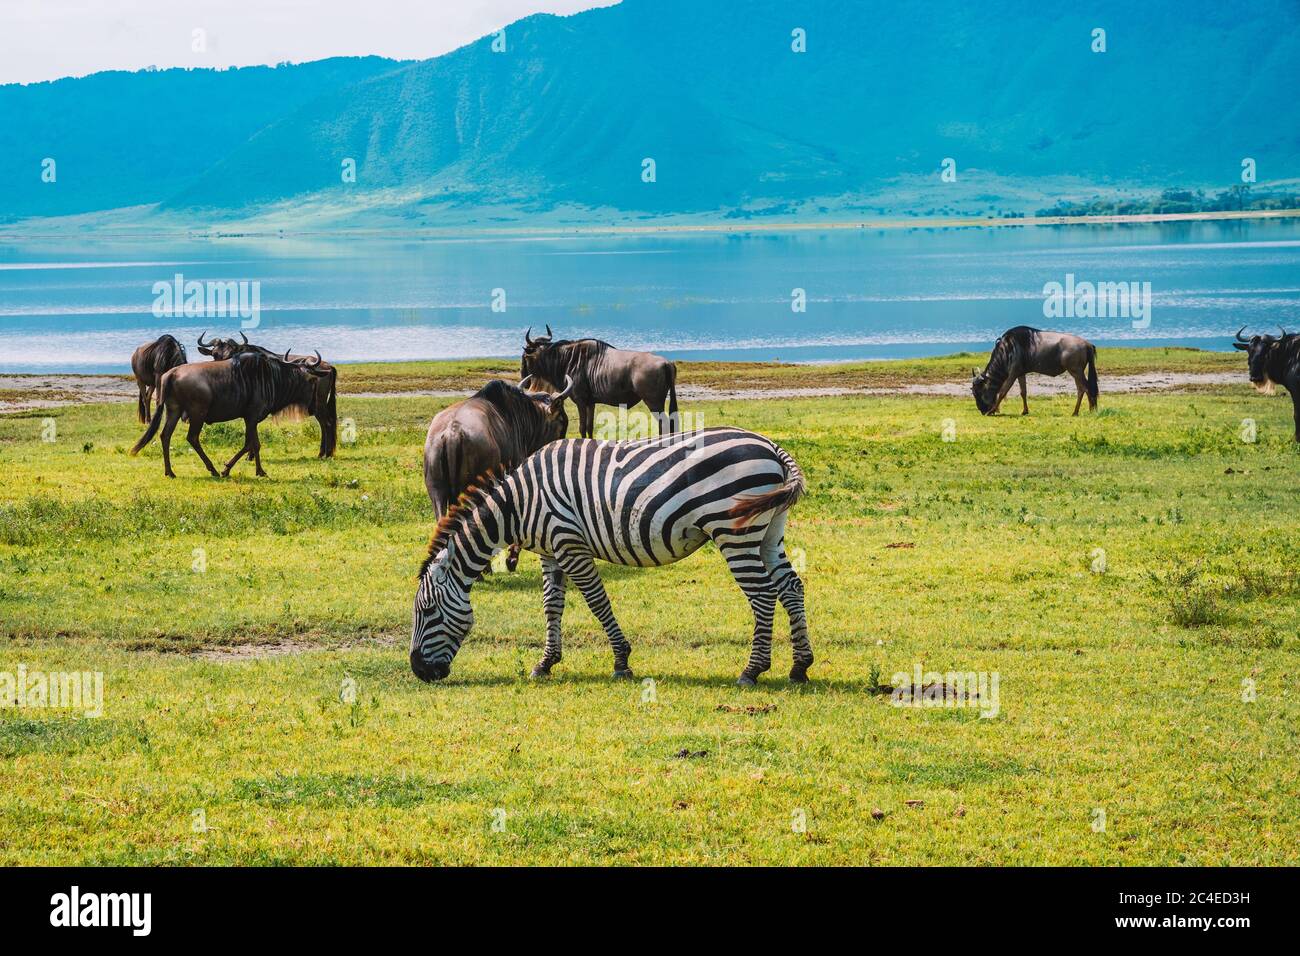 Bellissimo scenario di una zebra mangiare erba in un verde campo vicino ad altri animali con corna Foto Stock